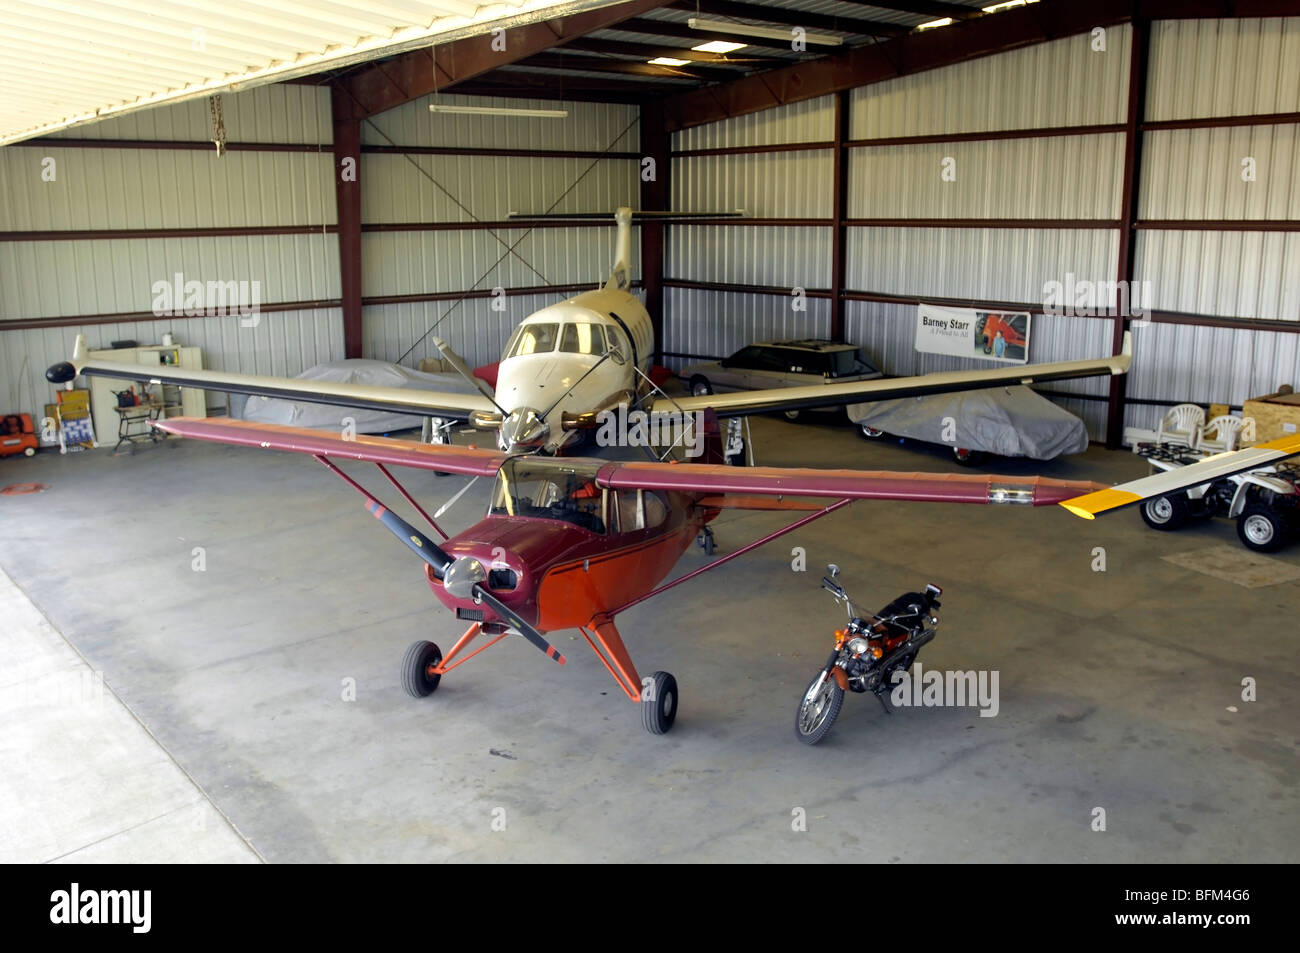 Dos aviones estacionados hangar de aviones privados en el sur de California Fotografía de - Alamy